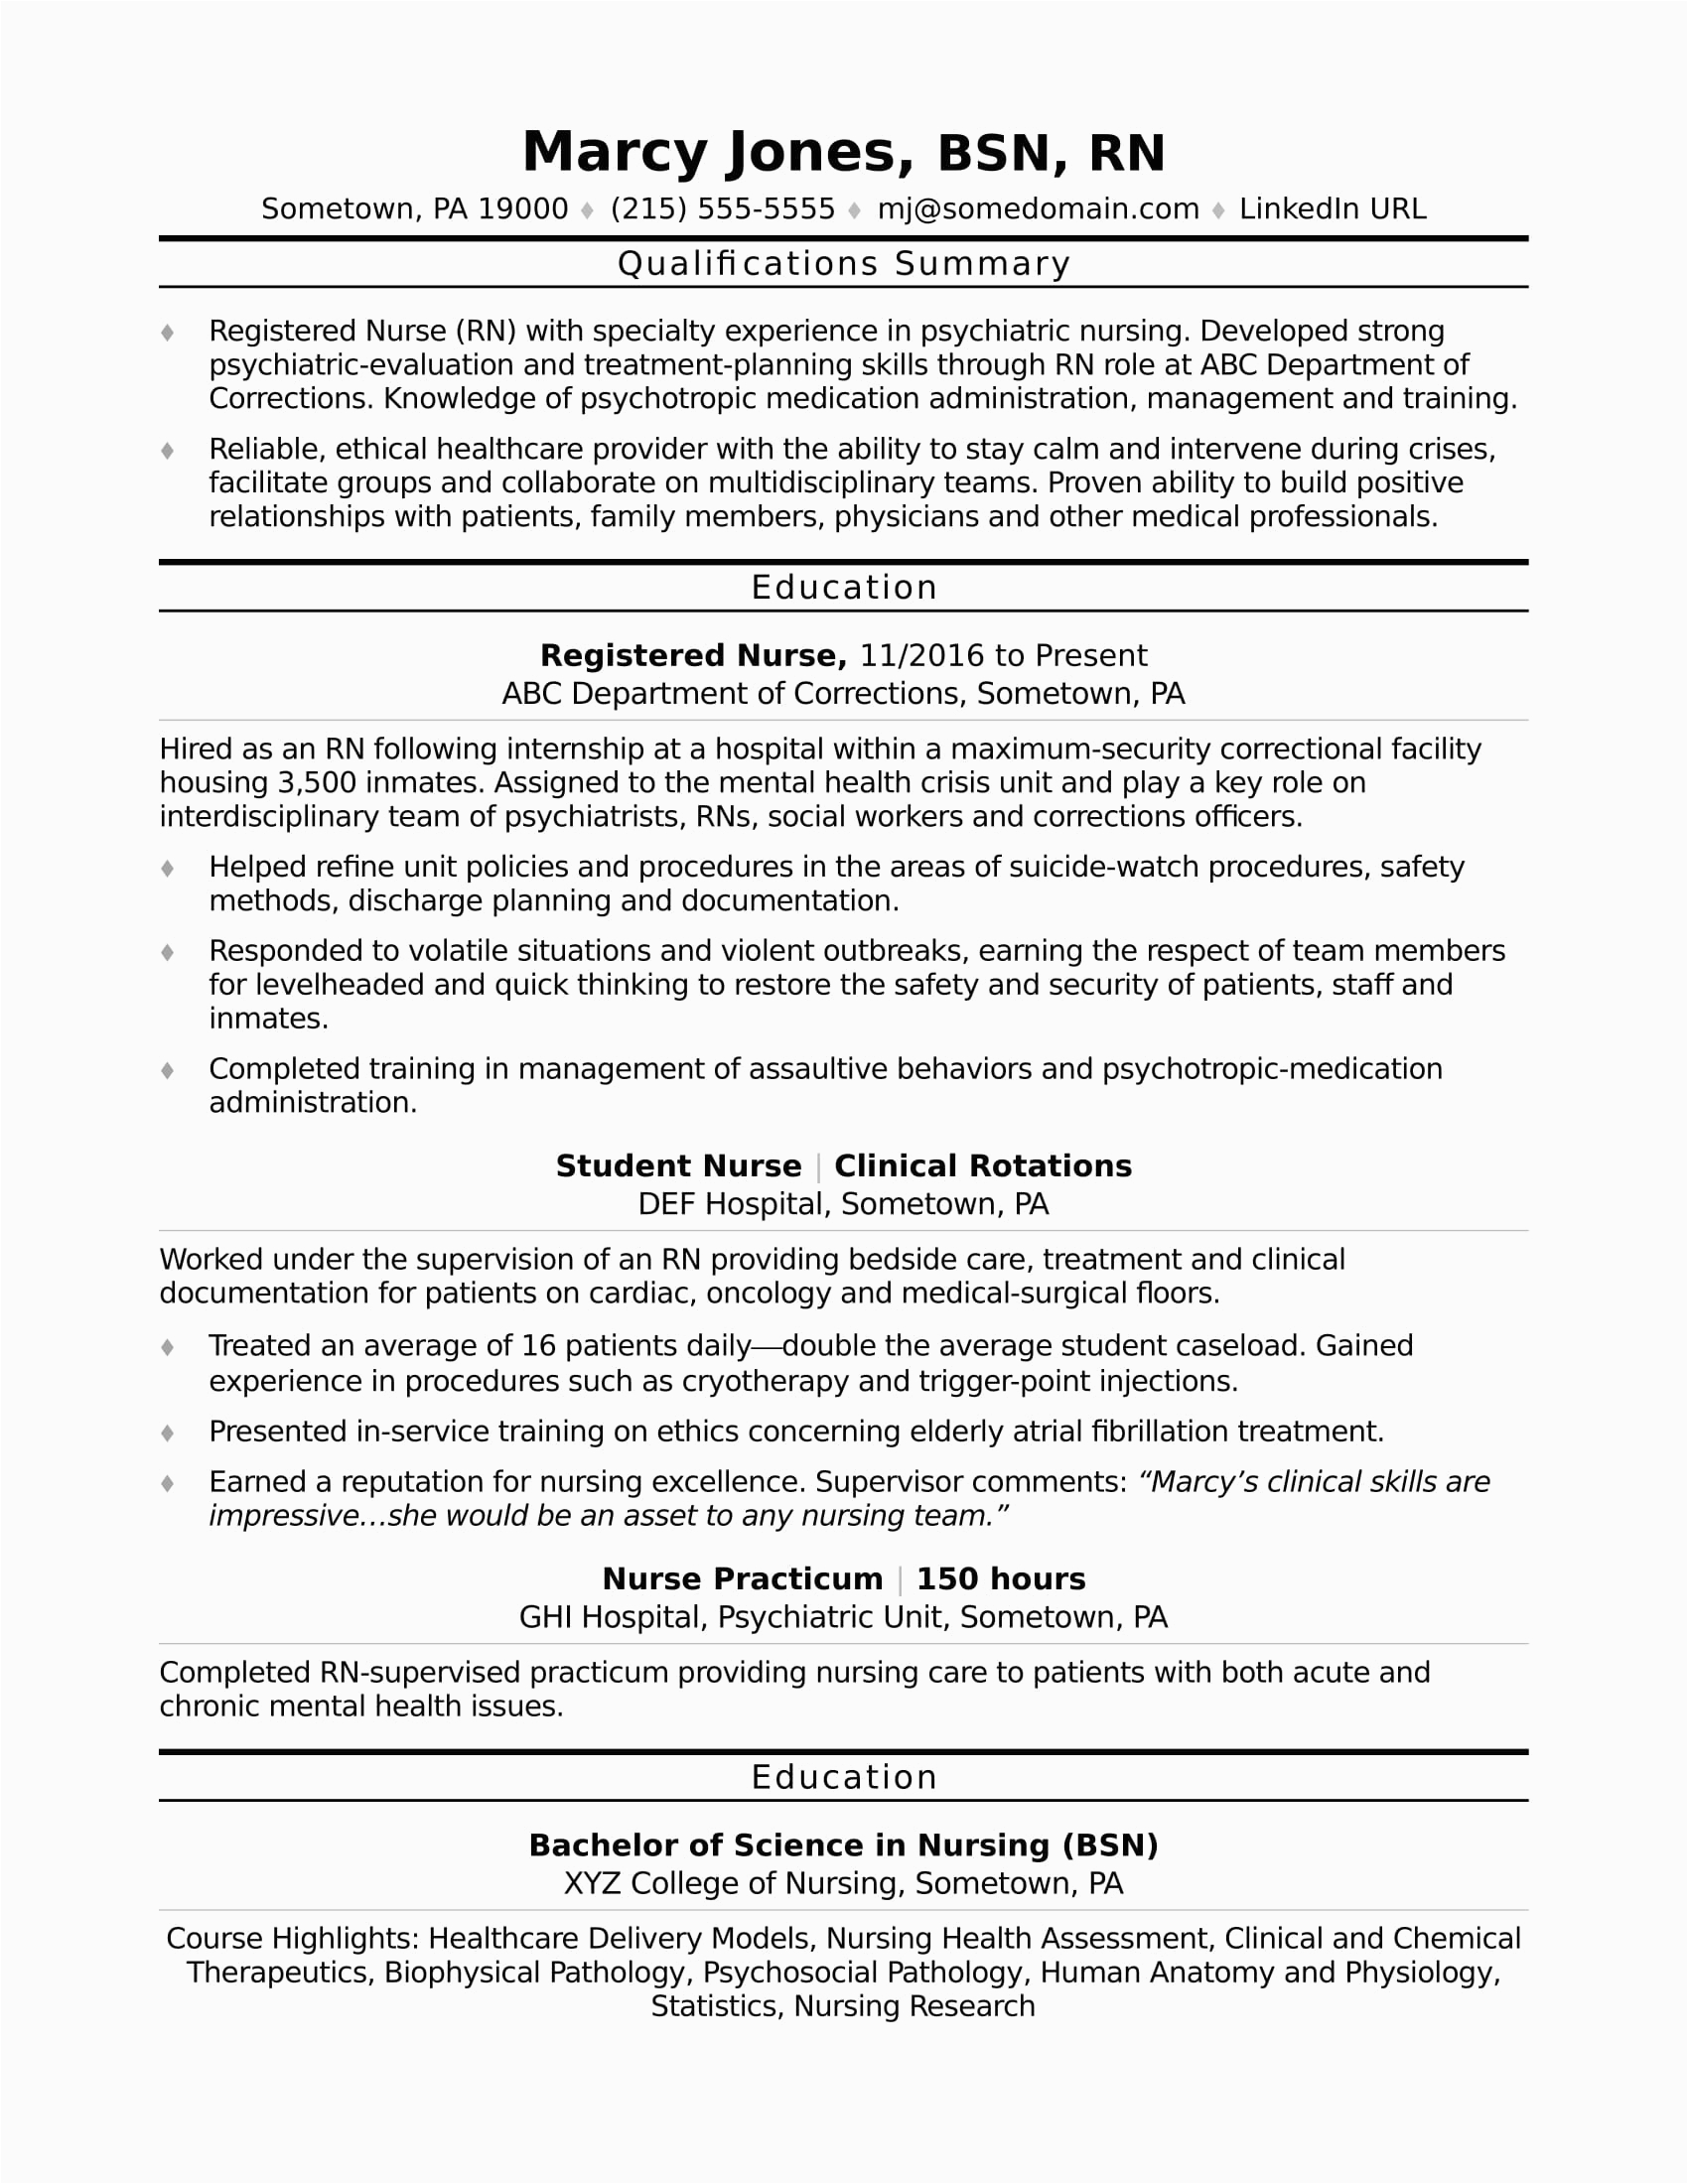 Sample Resume for A Nurse Position Registered Nurse Rn Resume Sample